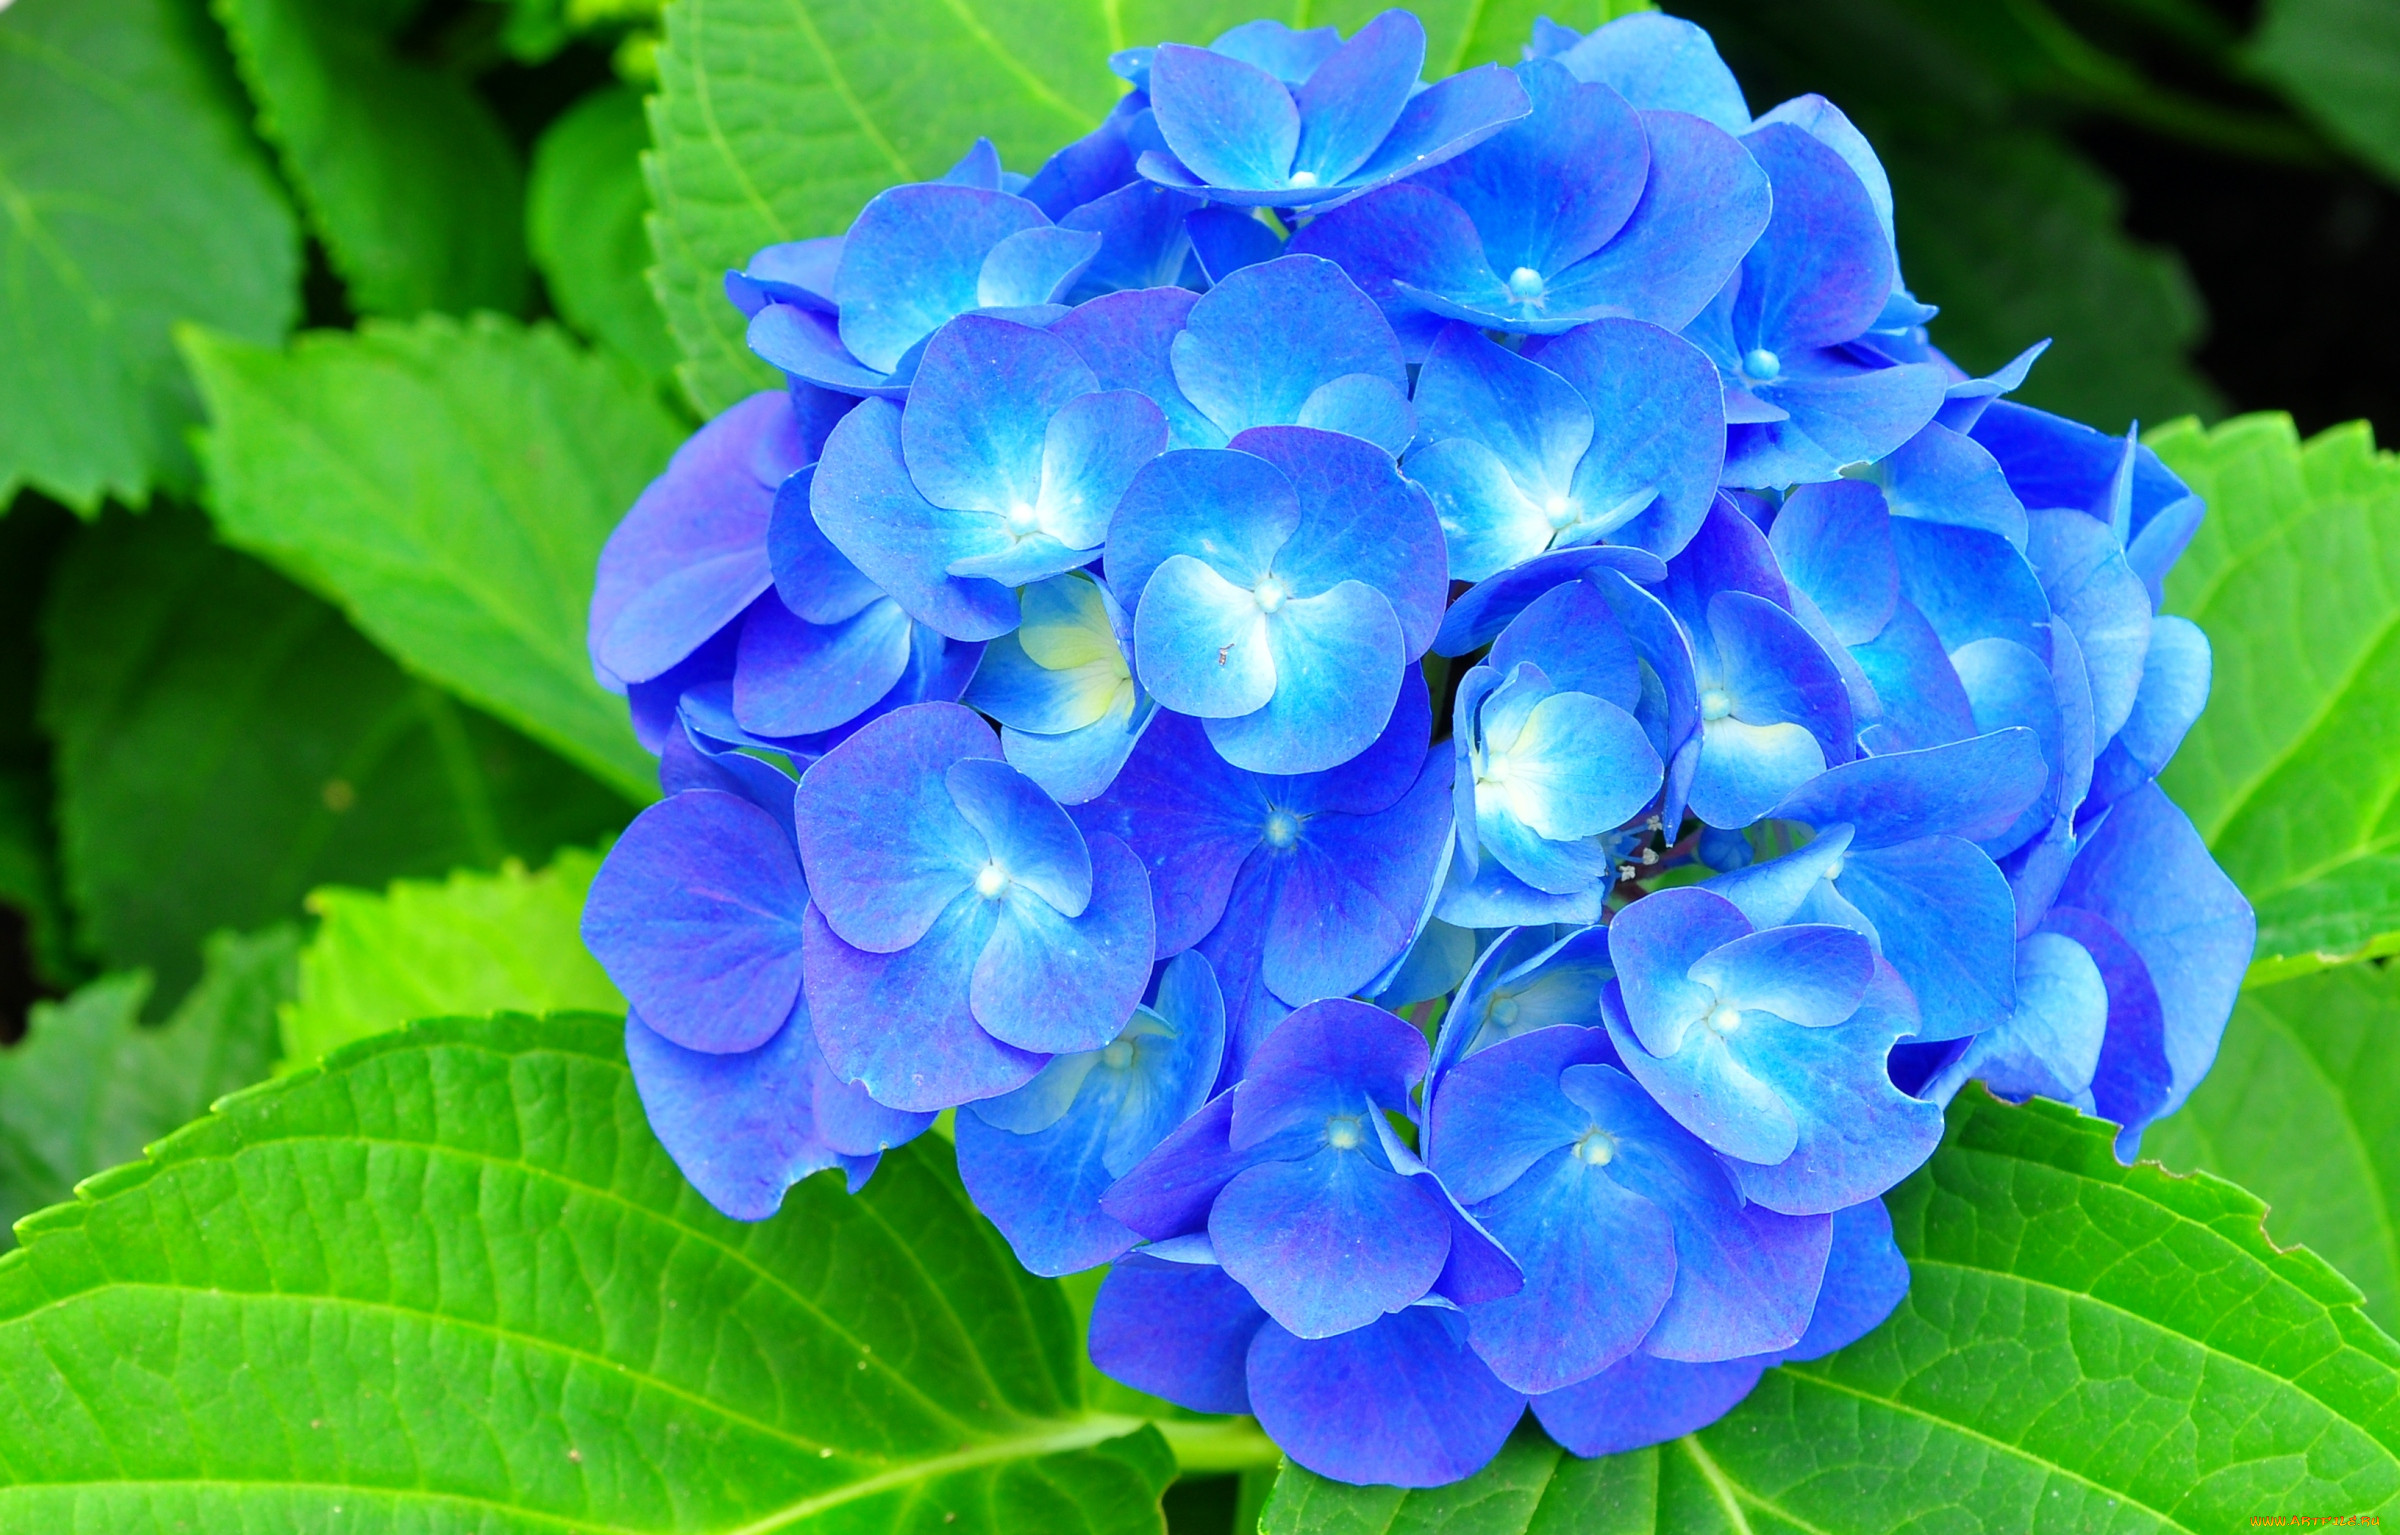 Наклоняешься к голубому цветку и с удивлением